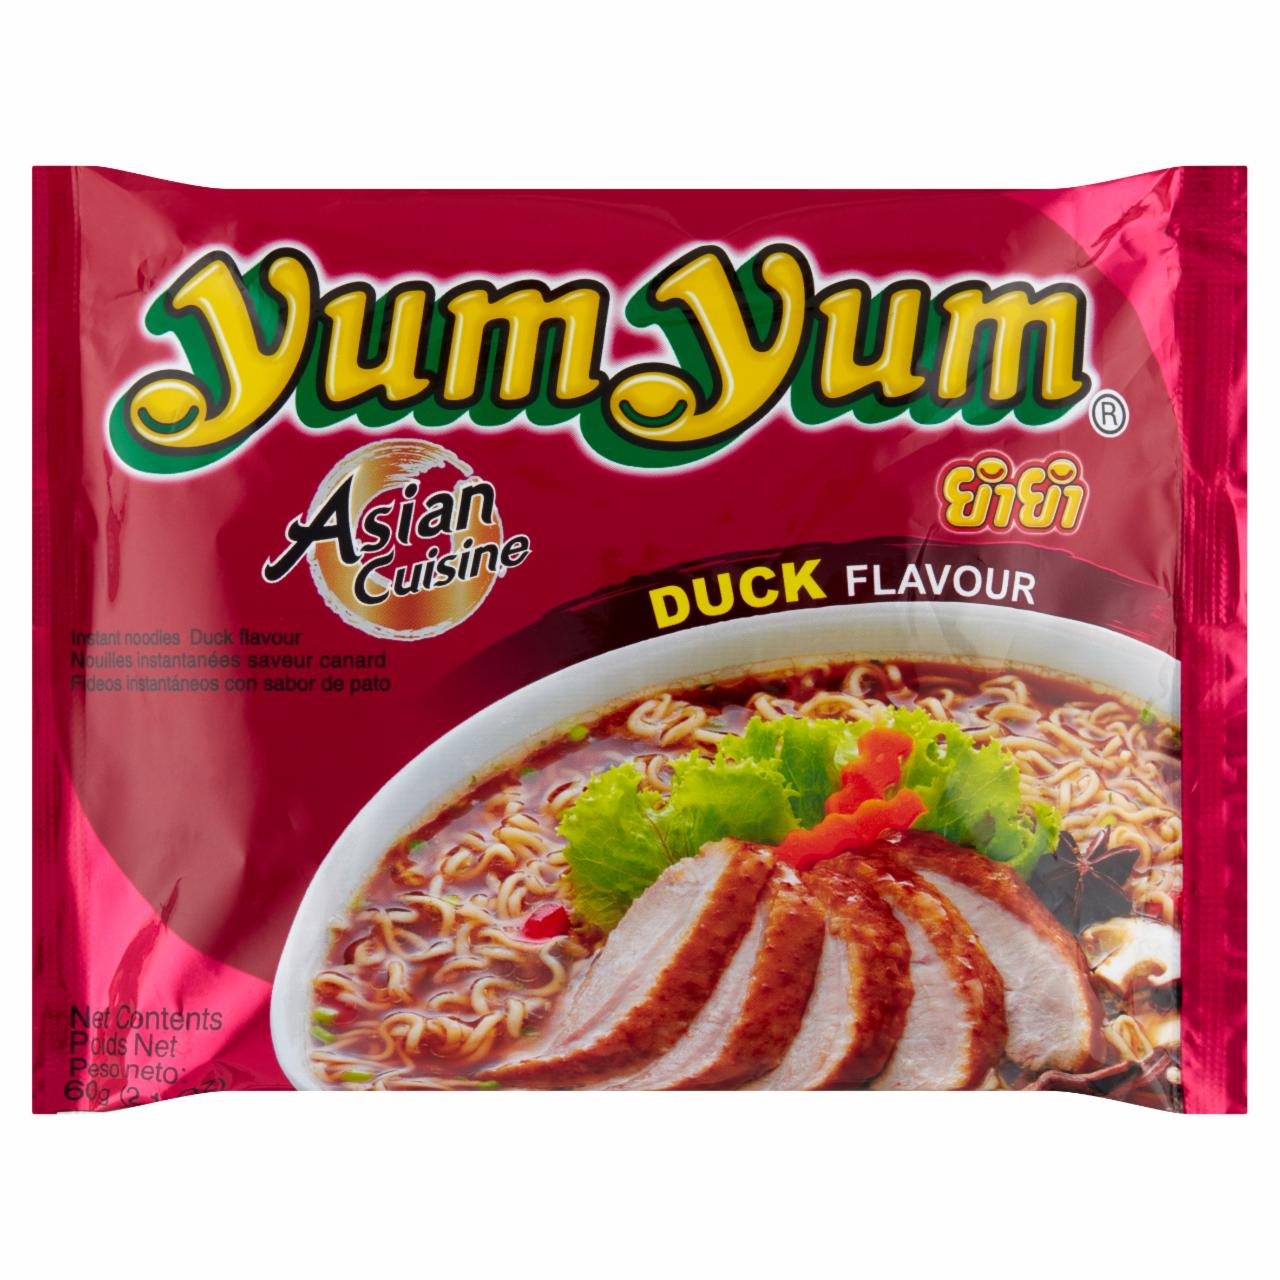 Zdjęcia - Instant Noodles Duck Flavour Yum Yum